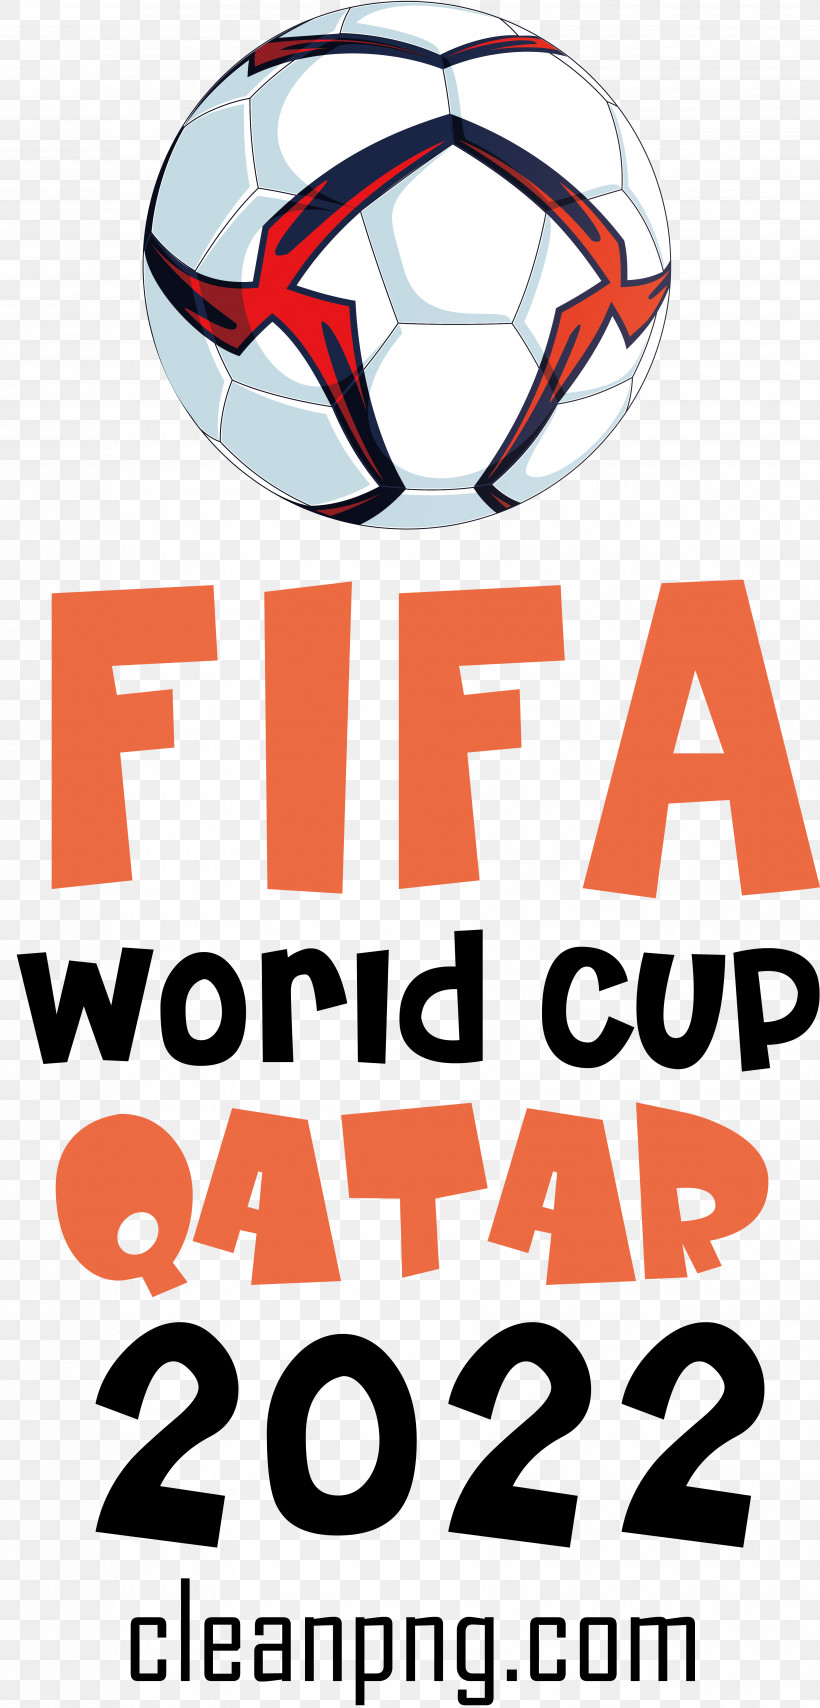 Fifa World Cup Qatar 2022 Fifa World Cup Qatar Football Soccer, PNG, 3562x7420px, Fifa World Cup Qatar 2022, Fifa World Cup, Football, Qatar, Soccer Download Free